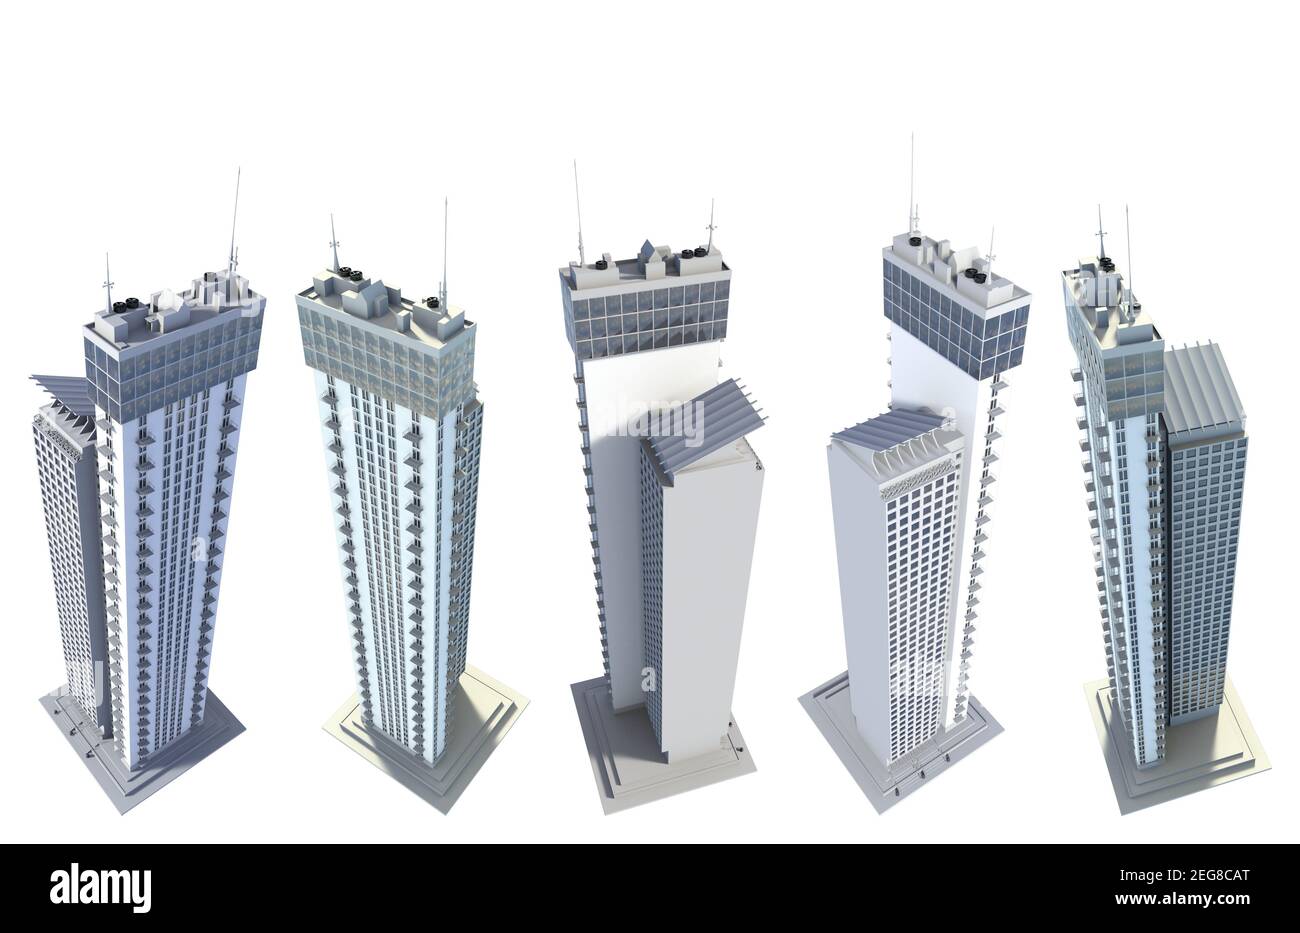 5 rendering vista dall'alto di grattacieli della città dal design immaginario, torri viventi con riflessi del cielo - isolato su bianco, illustrazione 3d dei grattacieli Foto Stock